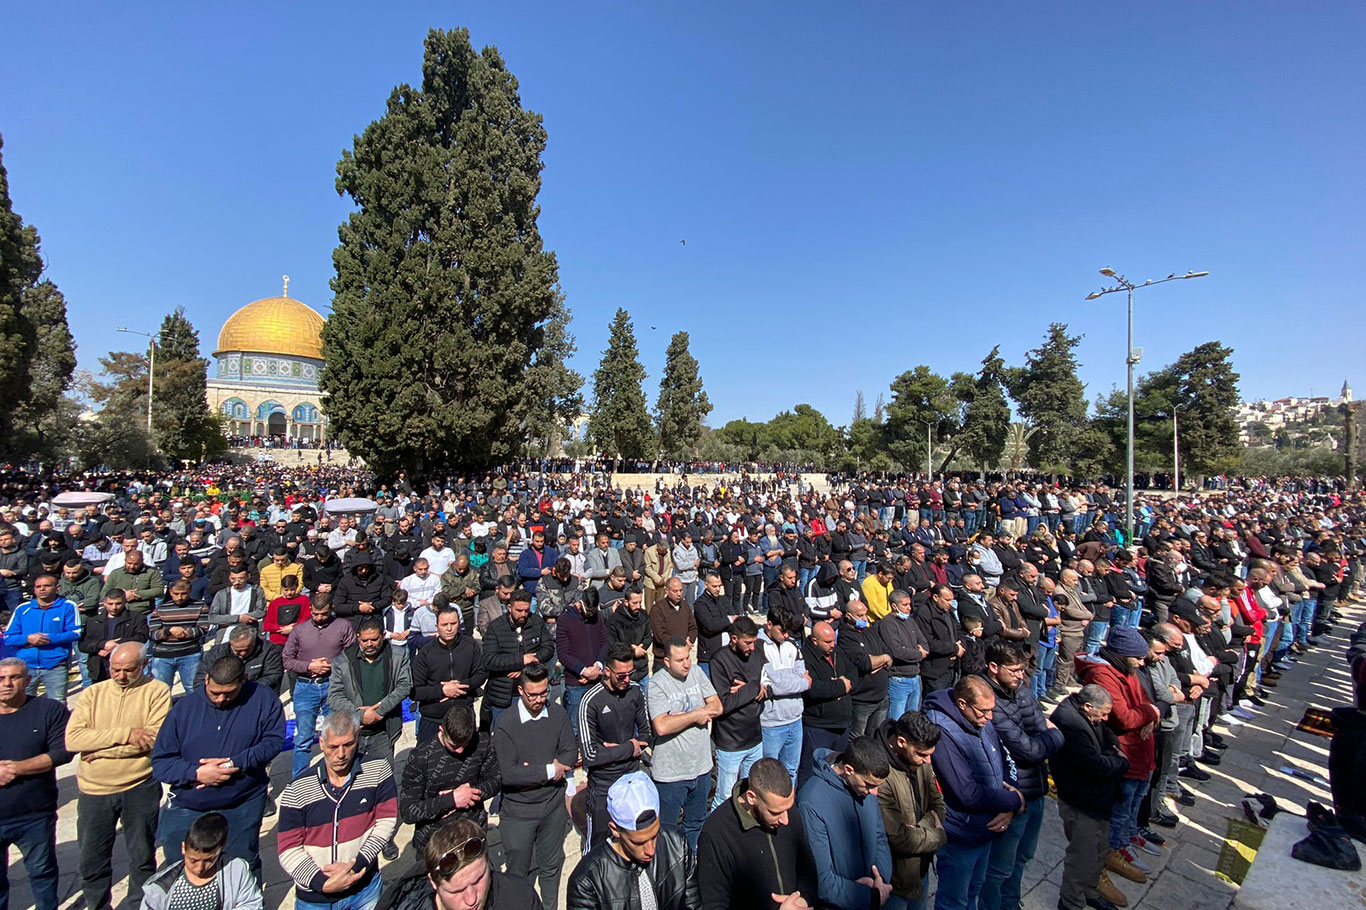 More than 60,000 Muslim worshippers perform Friday prayer at Al-Aqsa